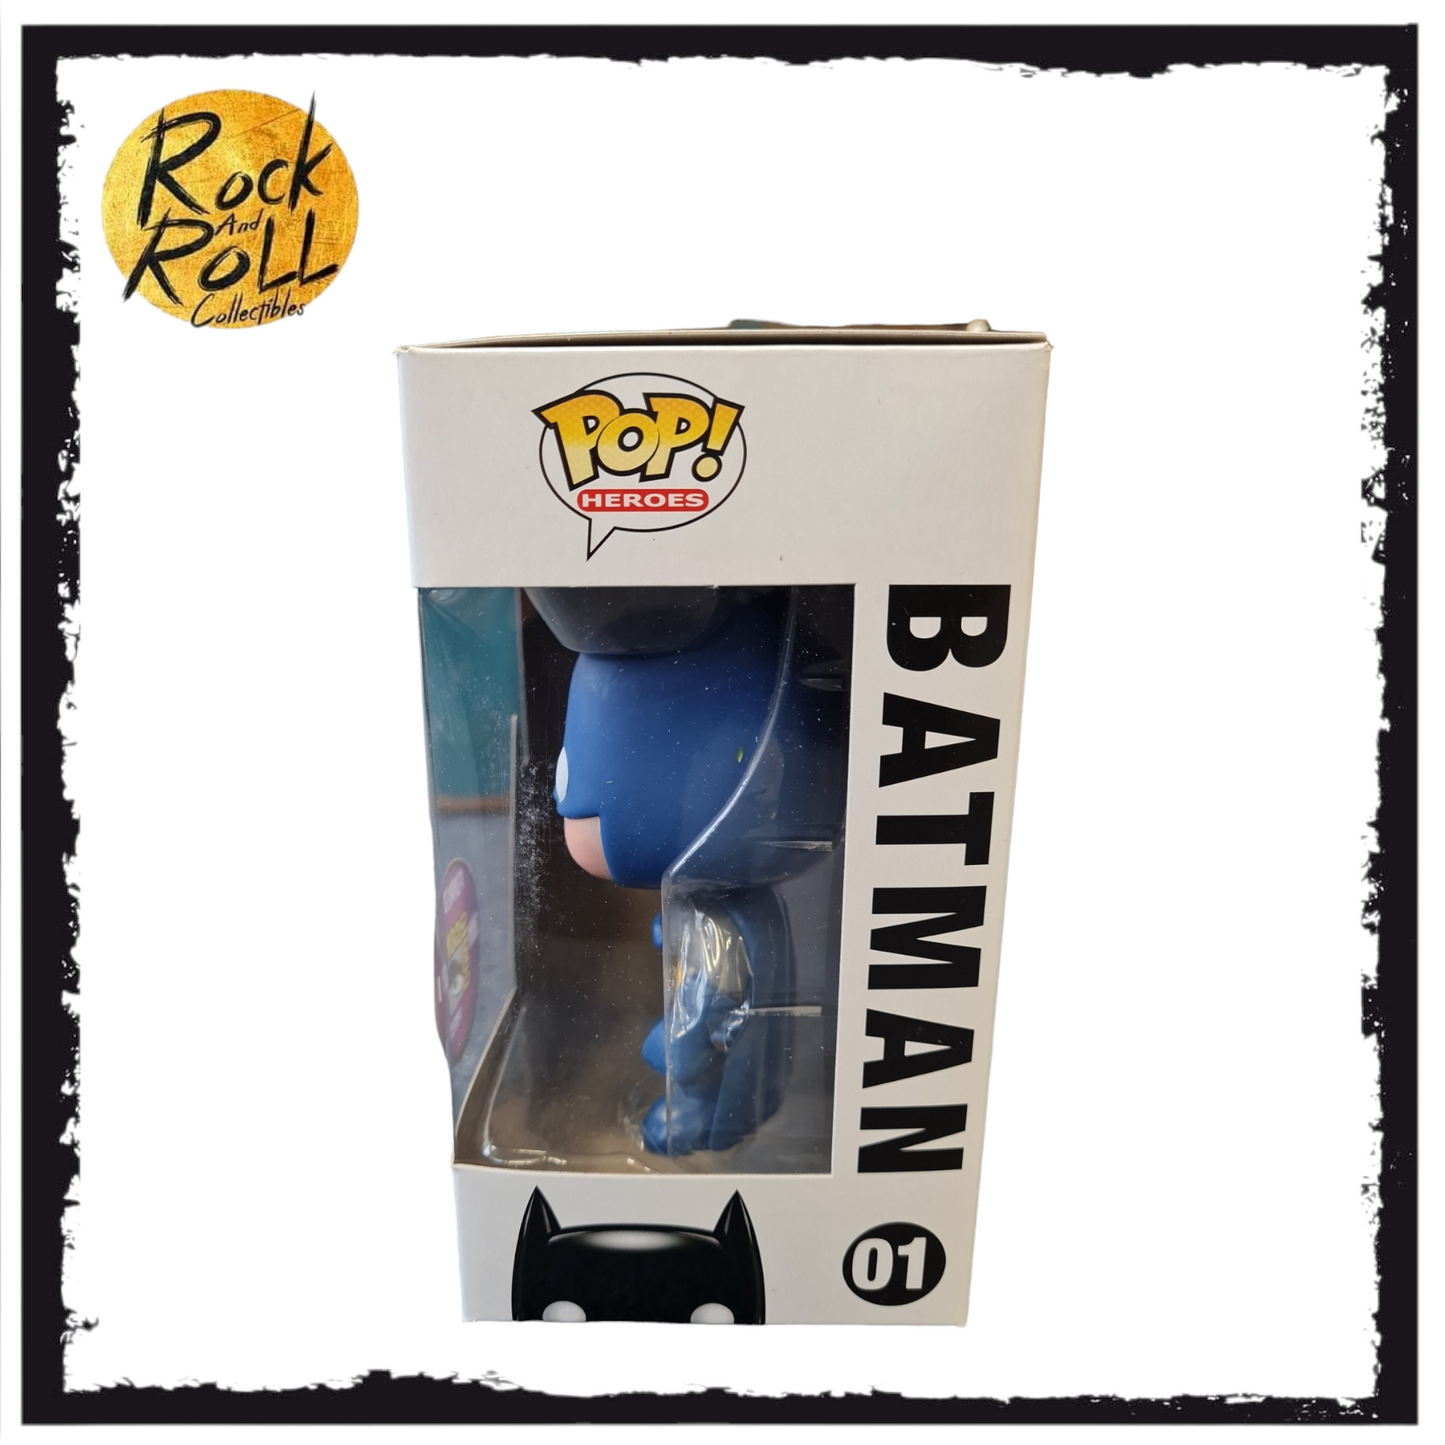 Batman #01 (Blue) Funko Pop! DC Universe - SDCC 2010 Exclusive LE480 Pcs - Condition 8.5/10